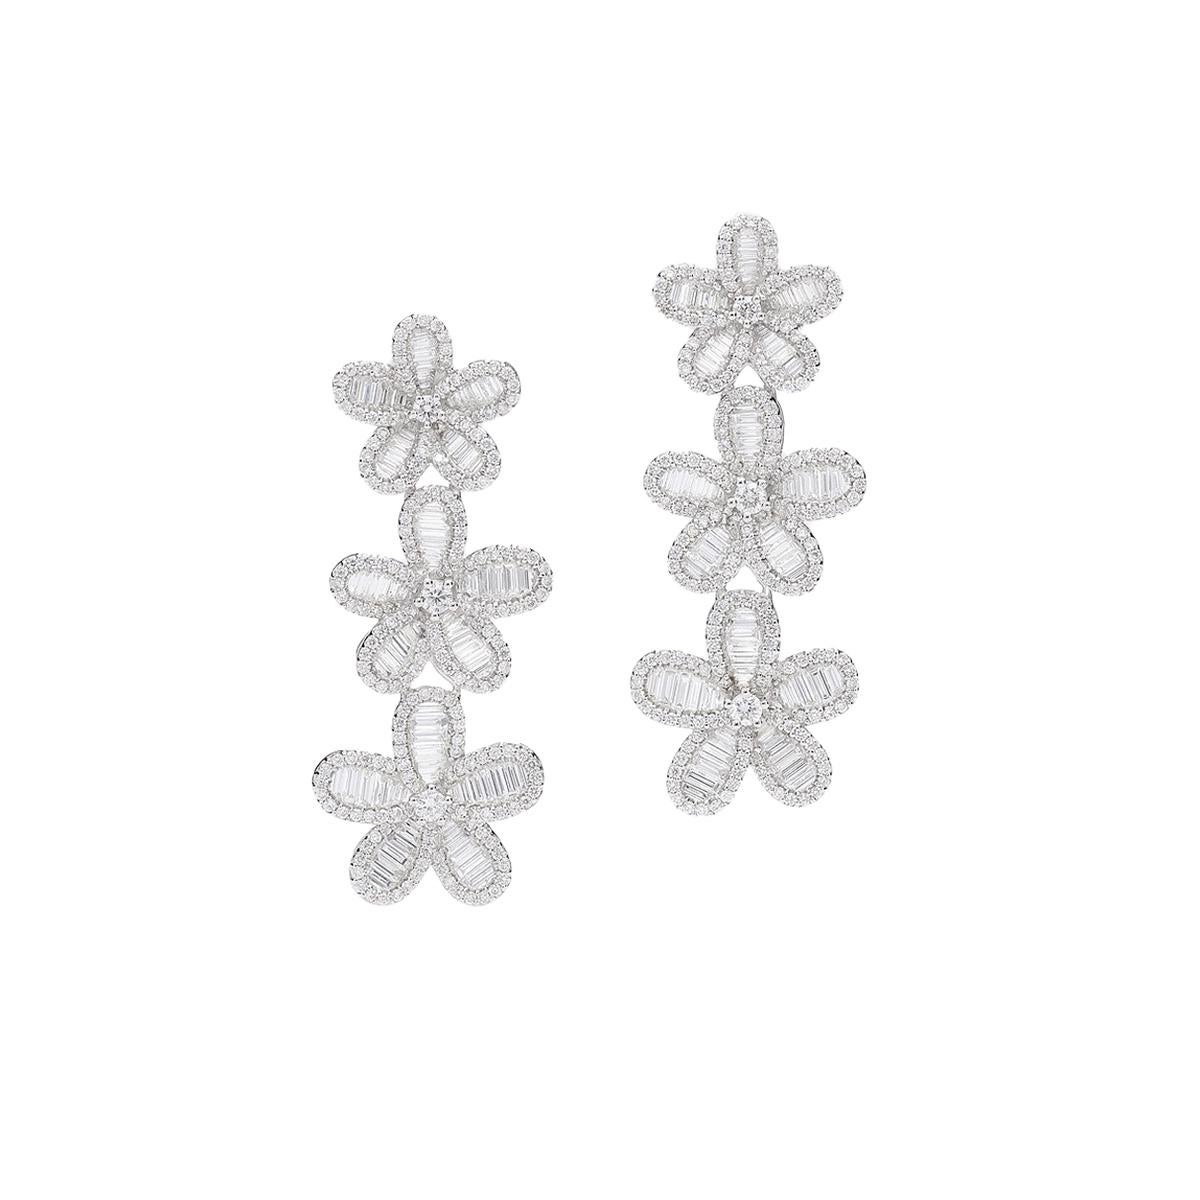 Baguette Cut Flowers Diamonds Pendant Earrings For Sale